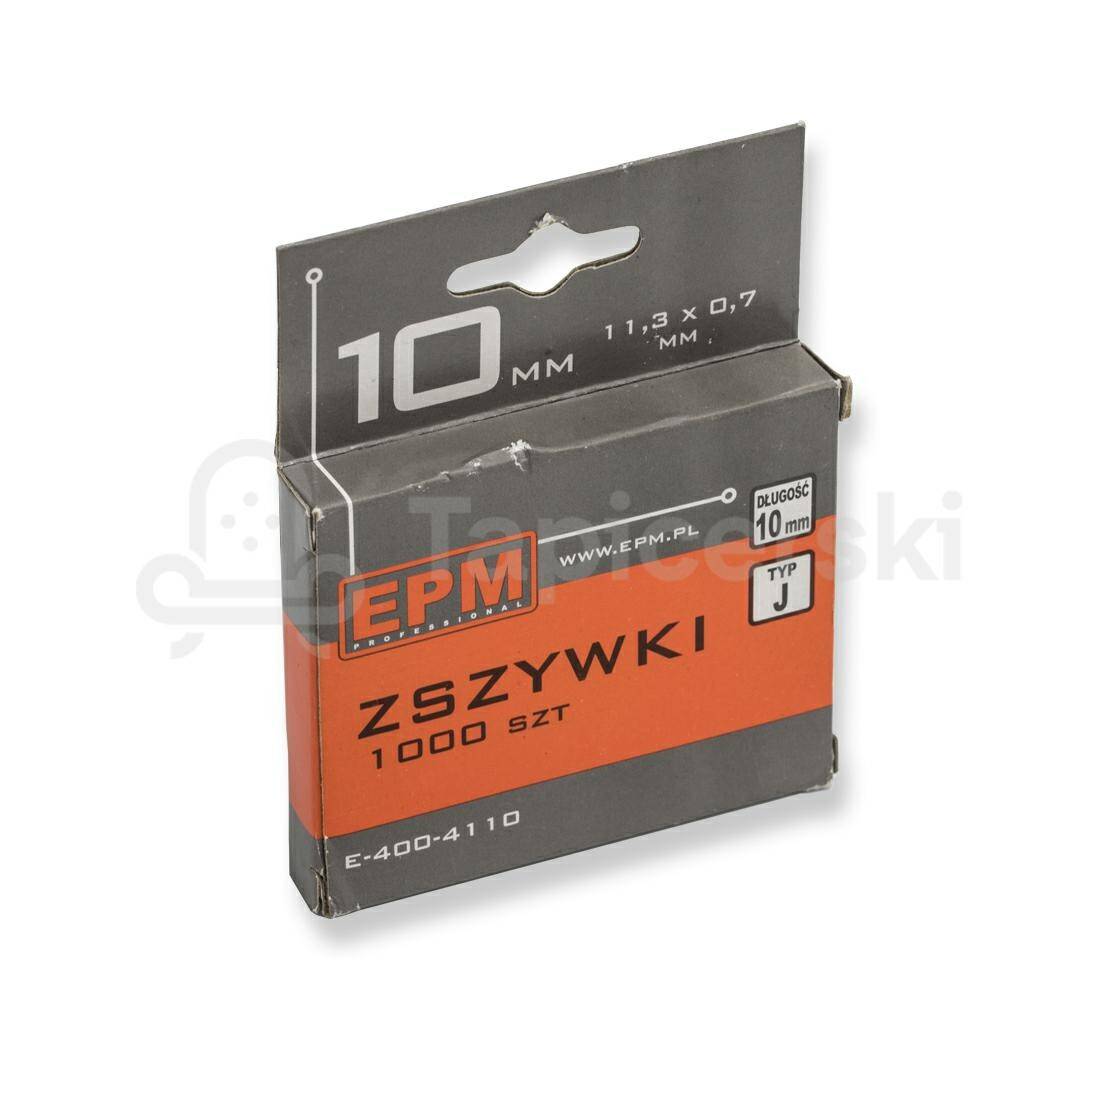 Zszywki EPM 10 mm Typ J-010 OPAK 1000 SZT